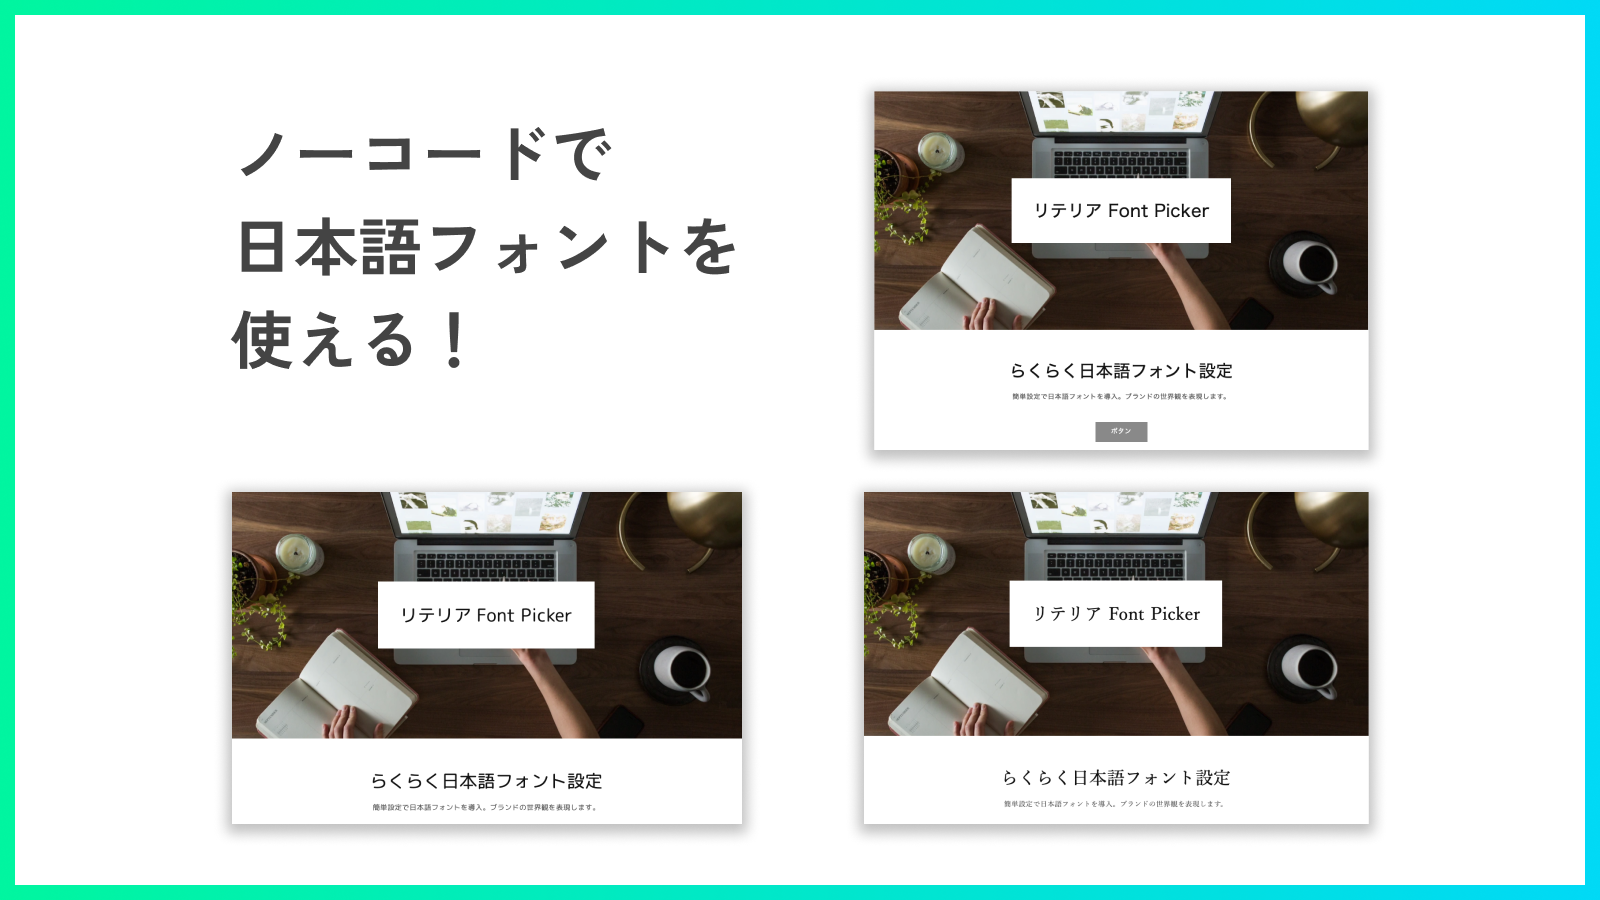 リテリア Font Picker を同憂するとノーコードで日本語フォントが使える！